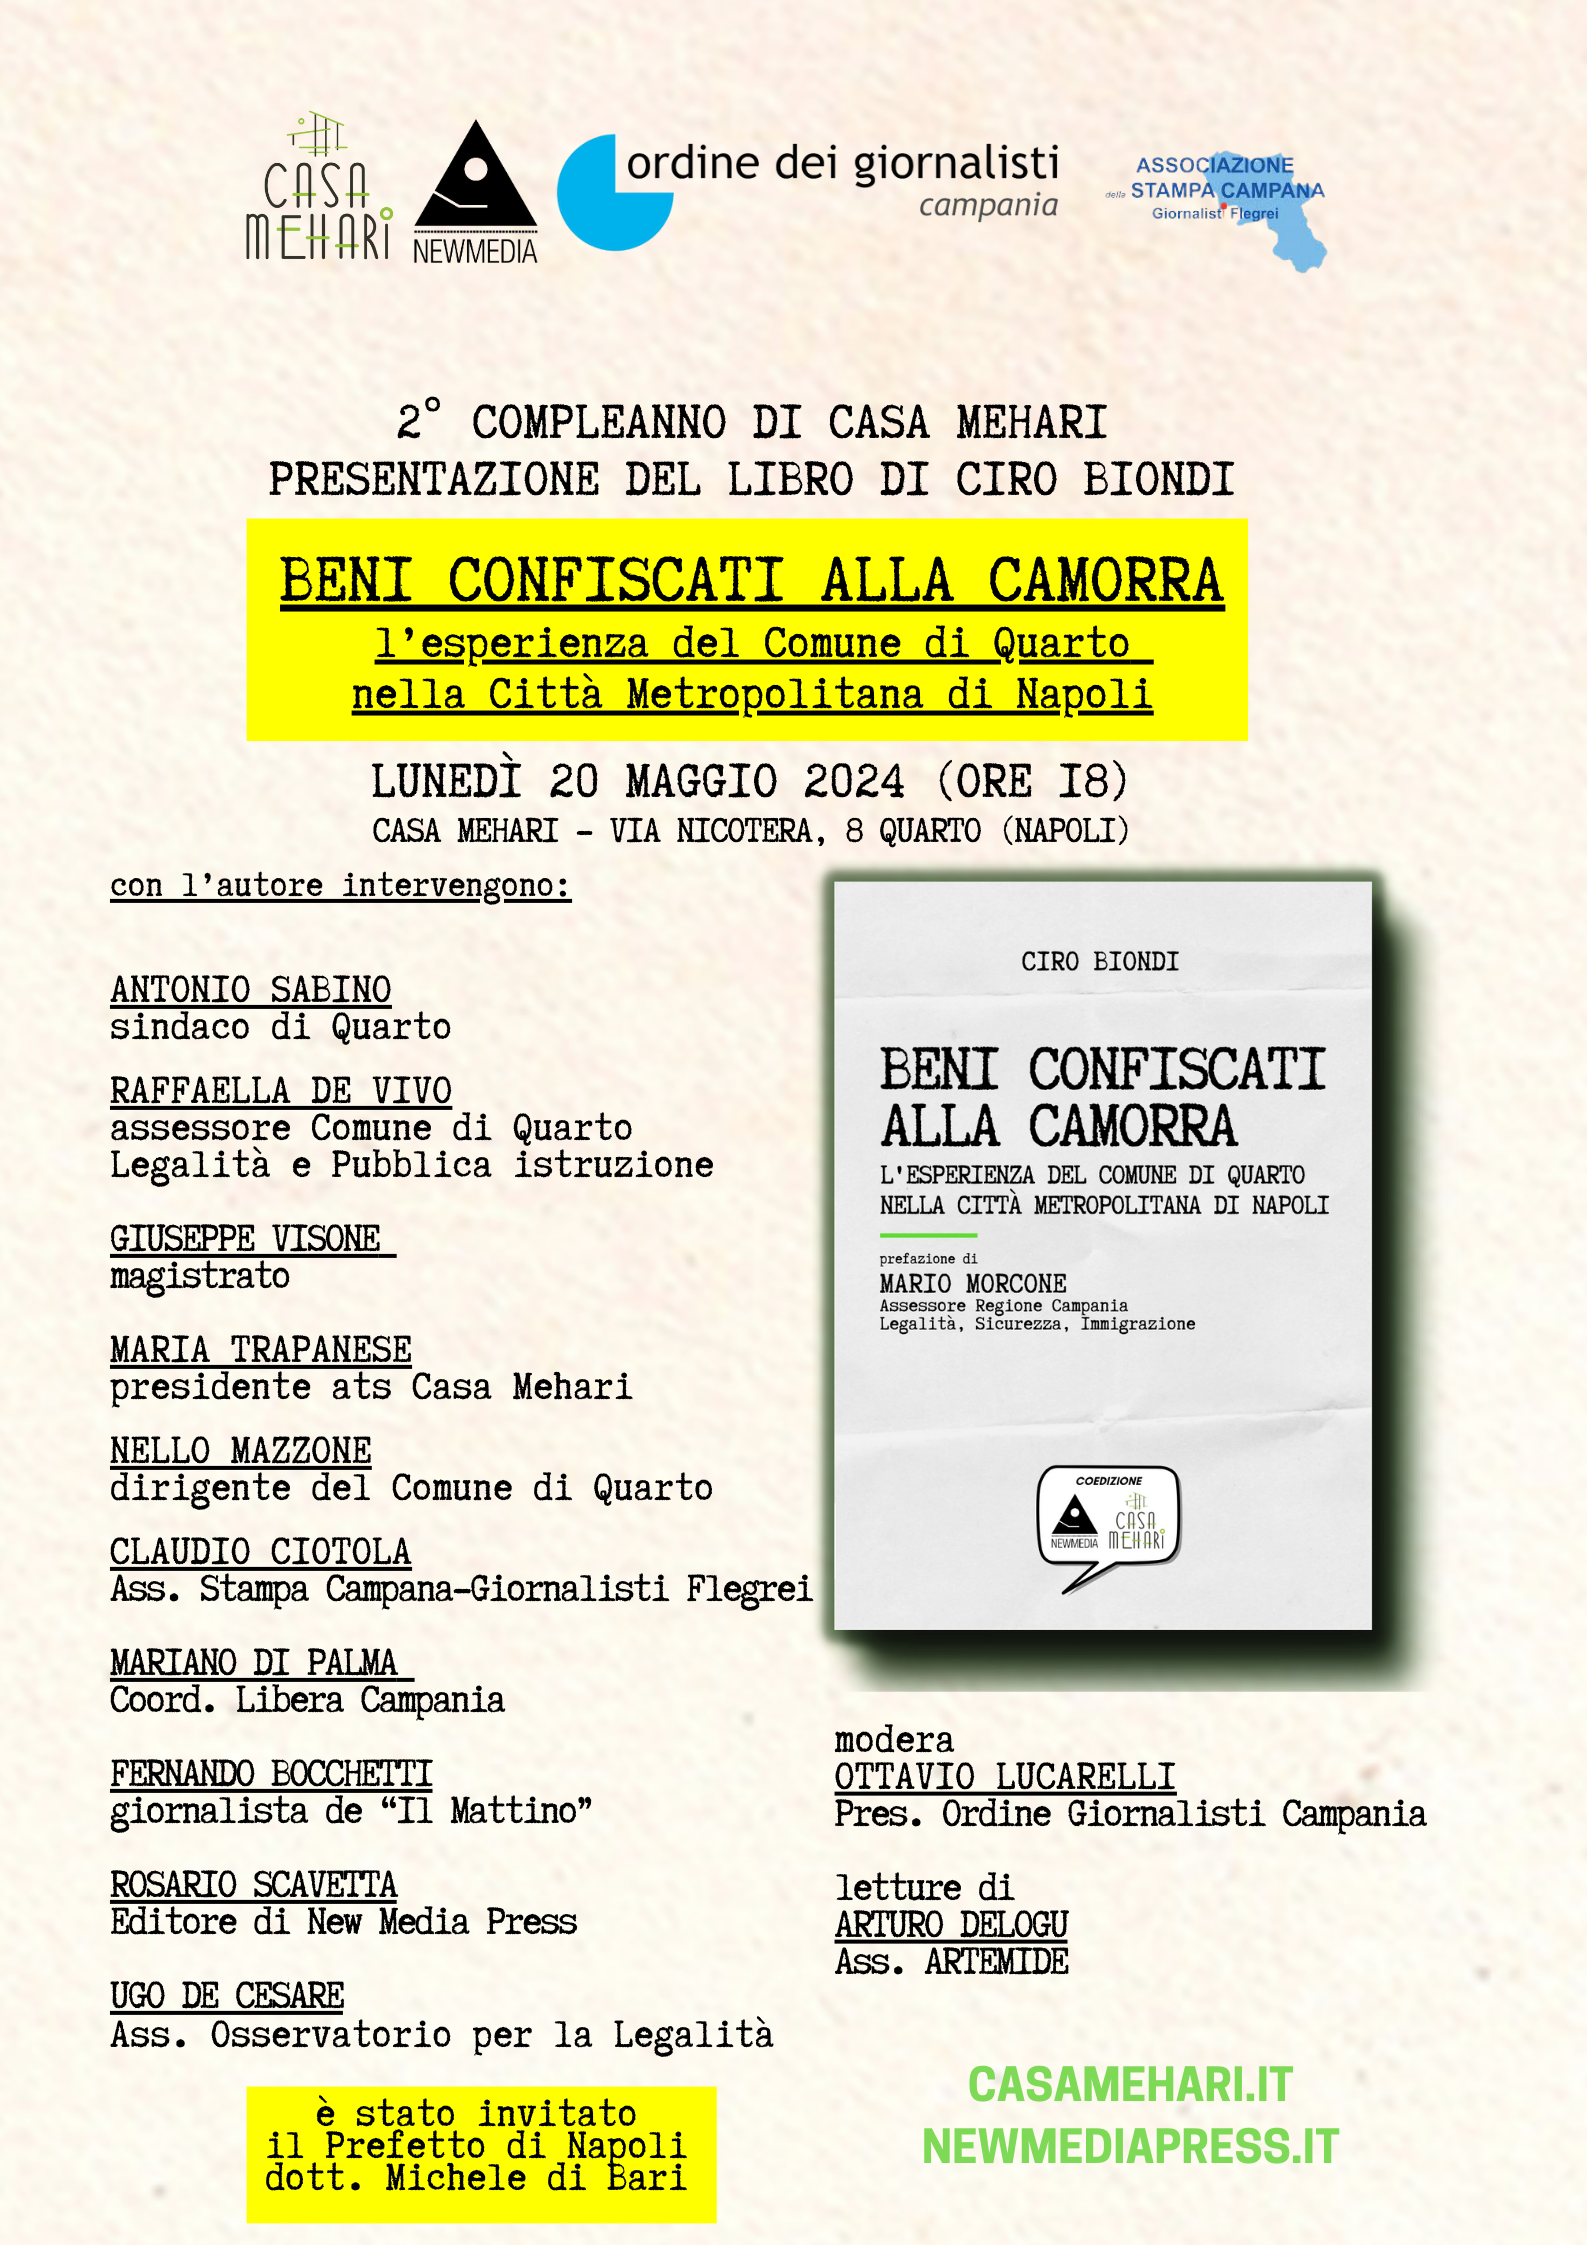 Quarto, Casa Mehari: presentazione del libro «Beni confiscati alla camorra» di Ciro Biondi